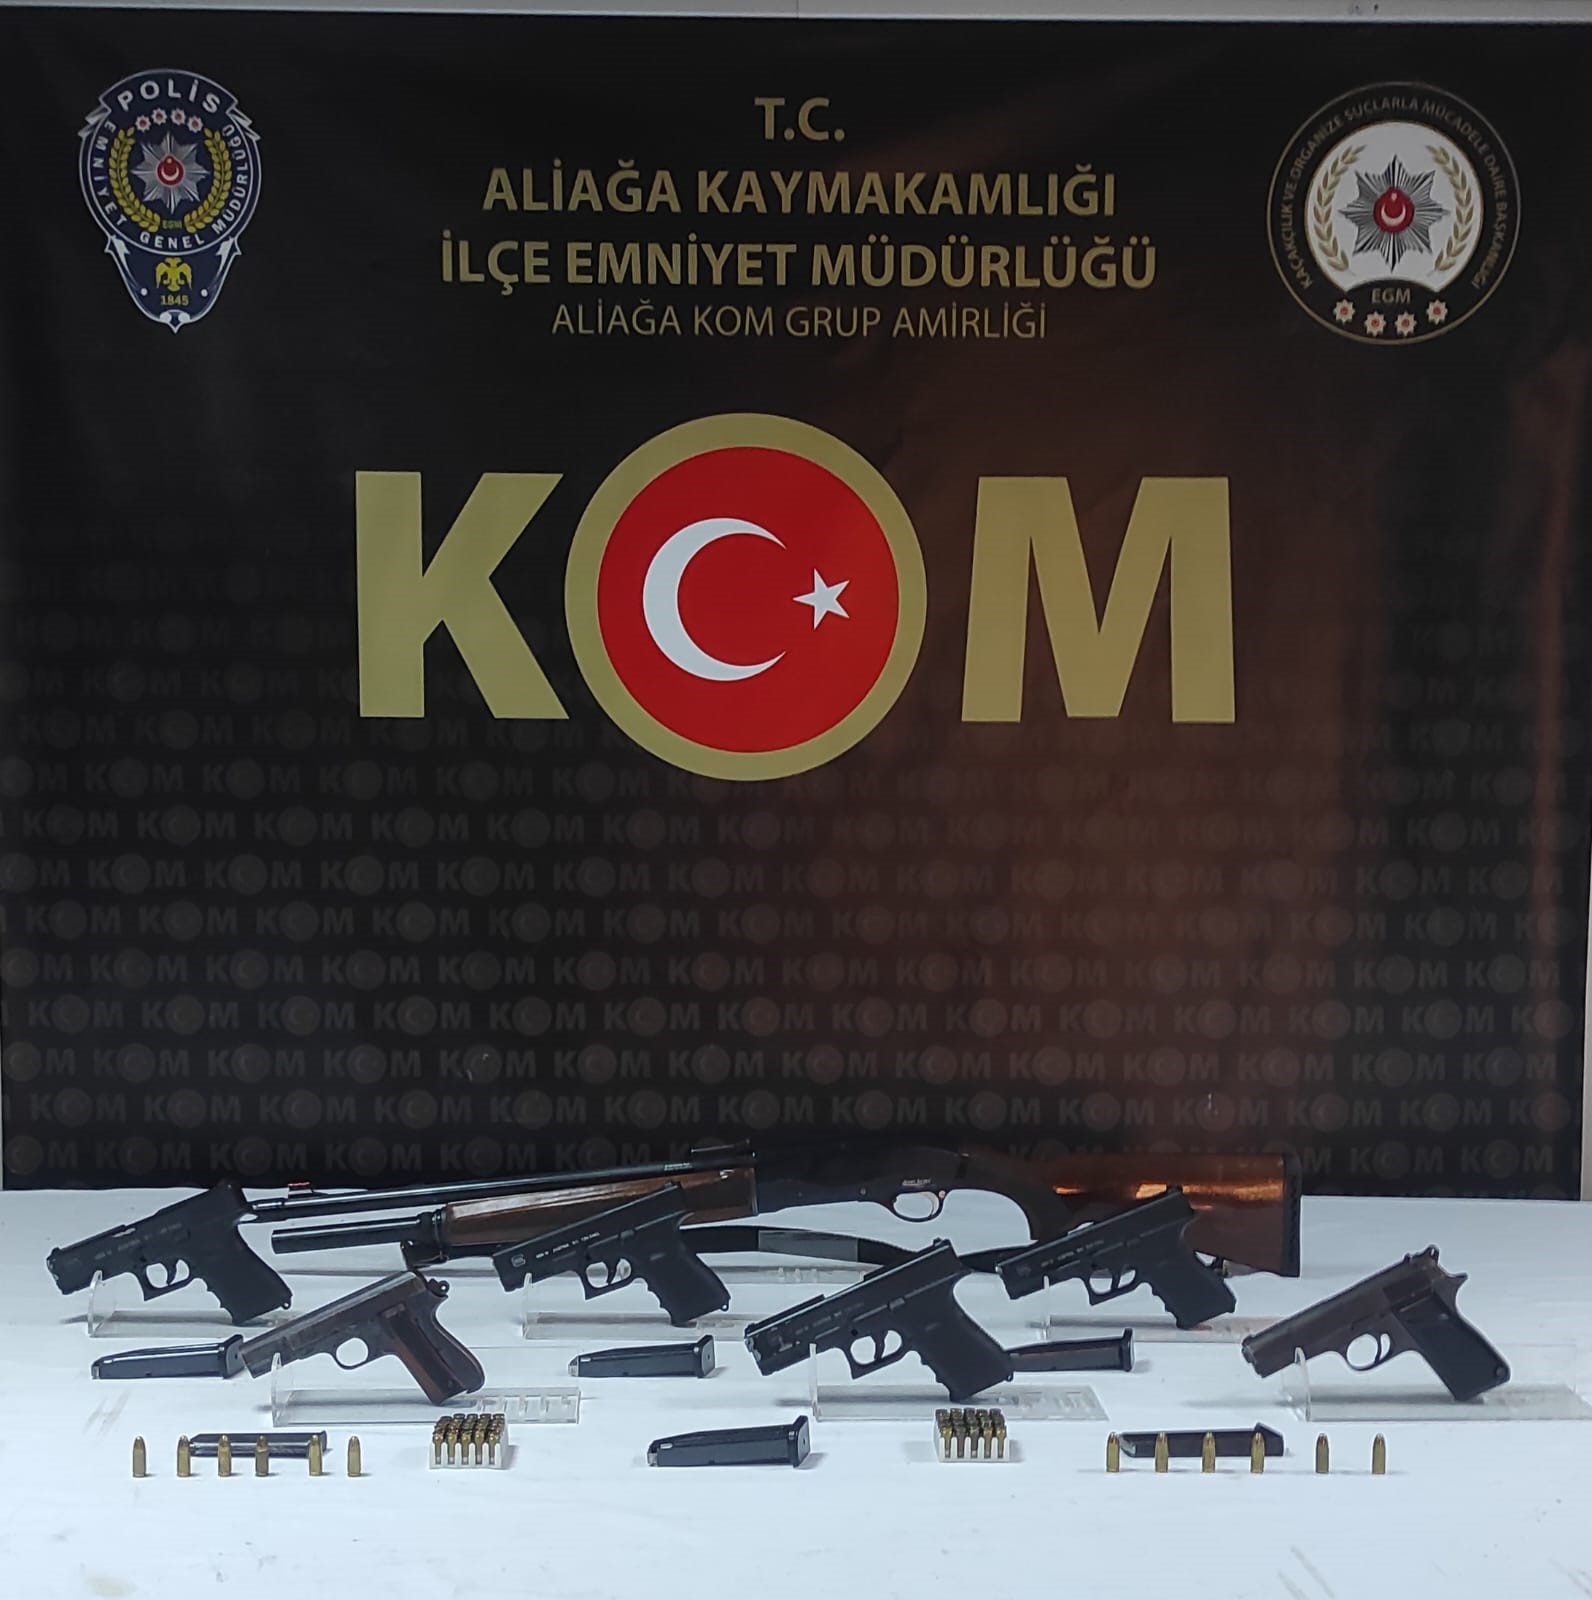 İzmir'de silah tacirinin evine polis baskını düzenlendi